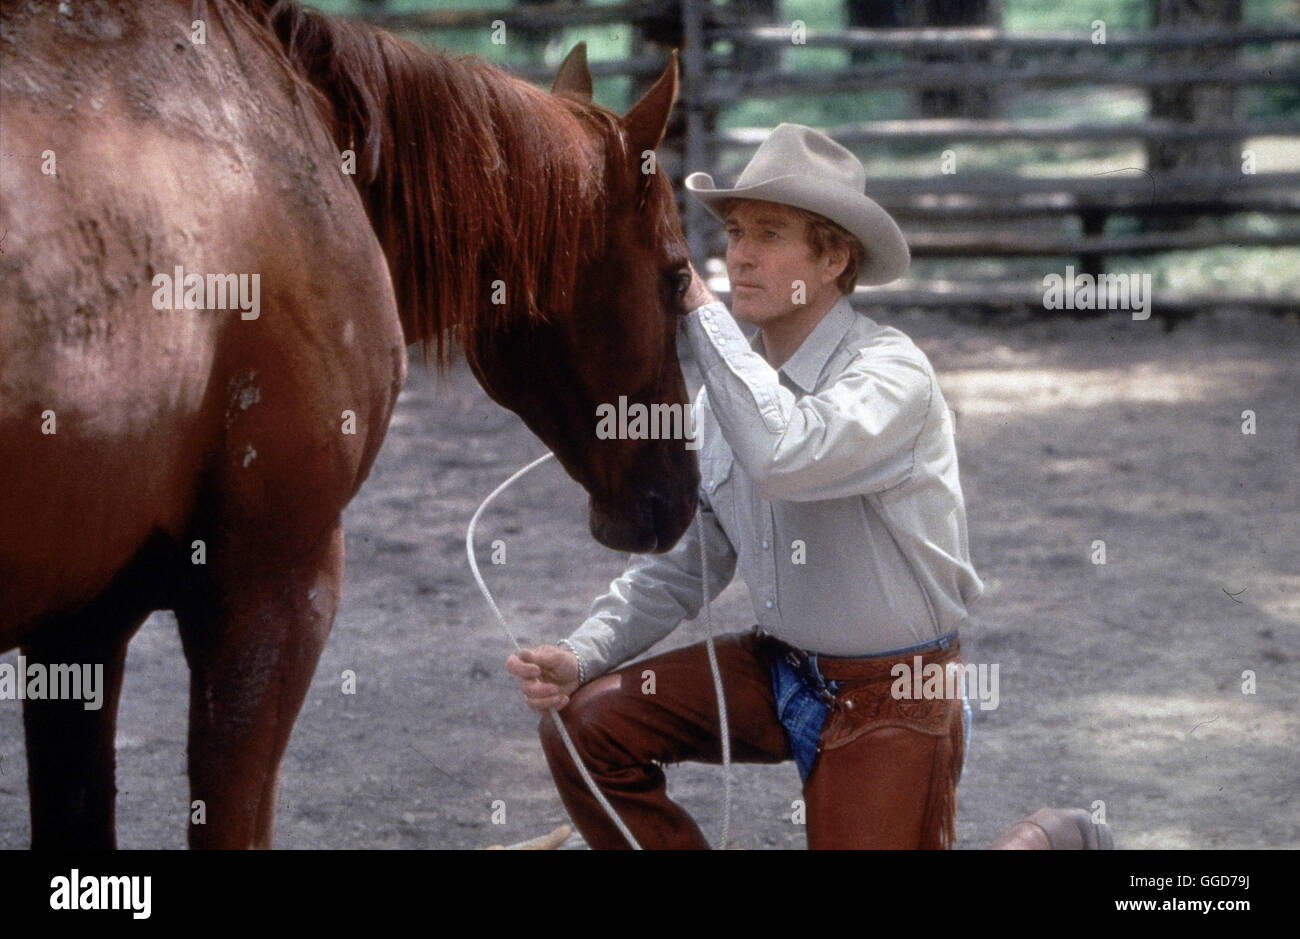 DER PFERDEFlöstERER / The Horse Whisperer USA 1998 / Robert Redford  Pferdeflösterer Tom Booker (ROBERT REDFORD)-Regie: Robert Redford aka. Der  Pferdeflüsterer Stockfotografie - Alamy